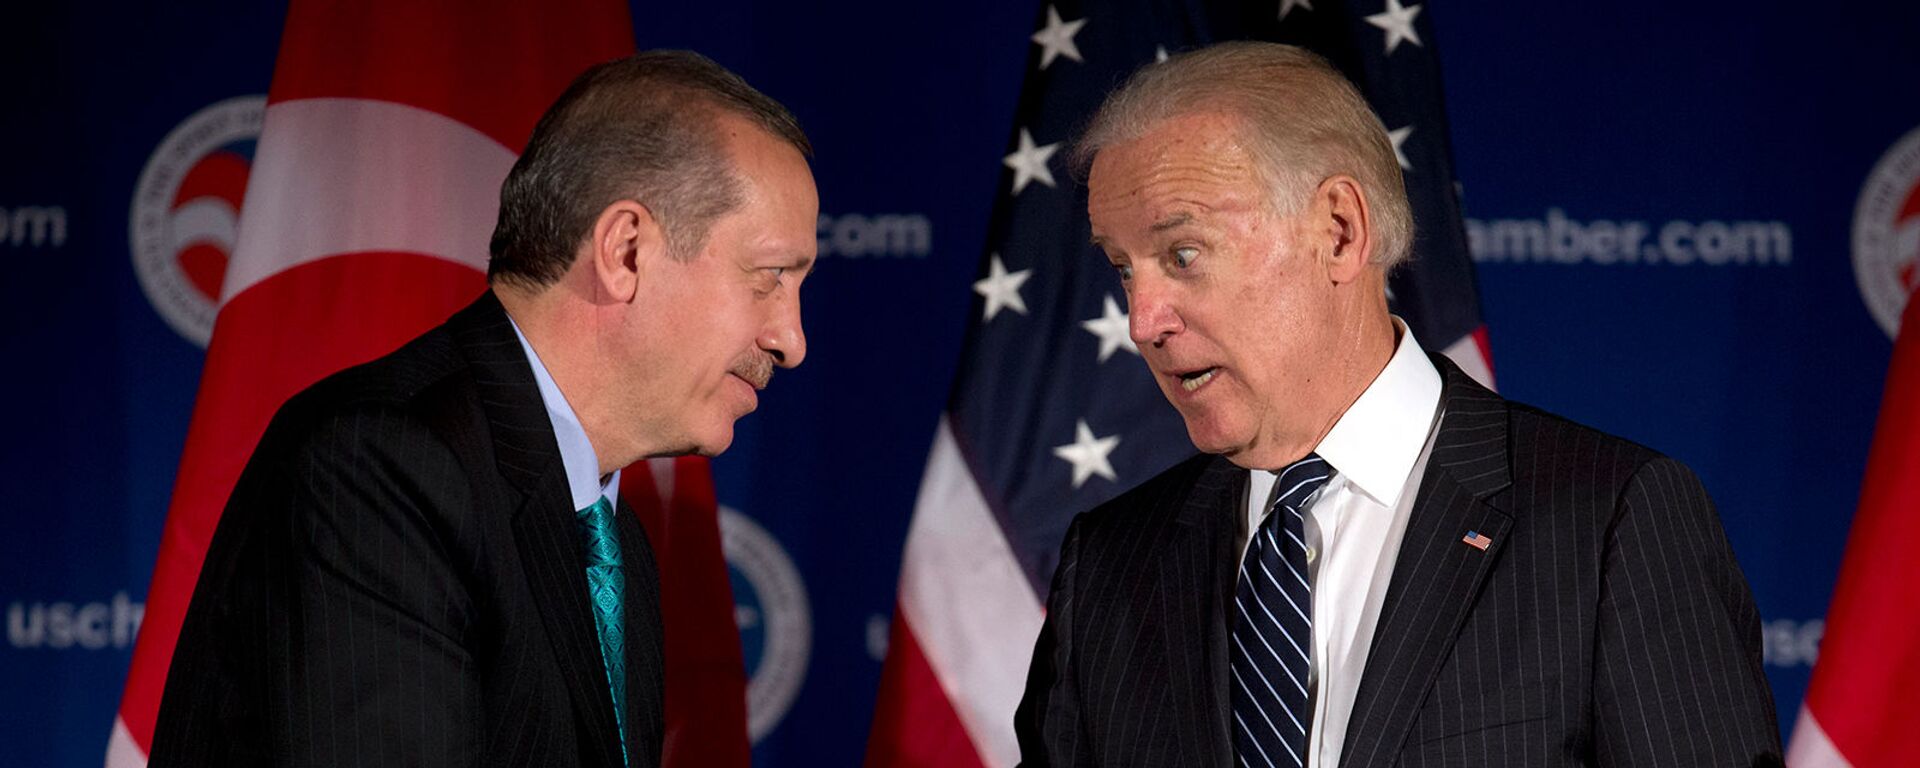 Вице-президент США Джо Байден и премьер-министр Турции Реджеп Тайип Эрдоган приветствуют друг друга во время круглого стола, организованного Торговой палатой США (16 мая 2013). Вашингтон - Sputnik Армения, 1920, 31.10.2021